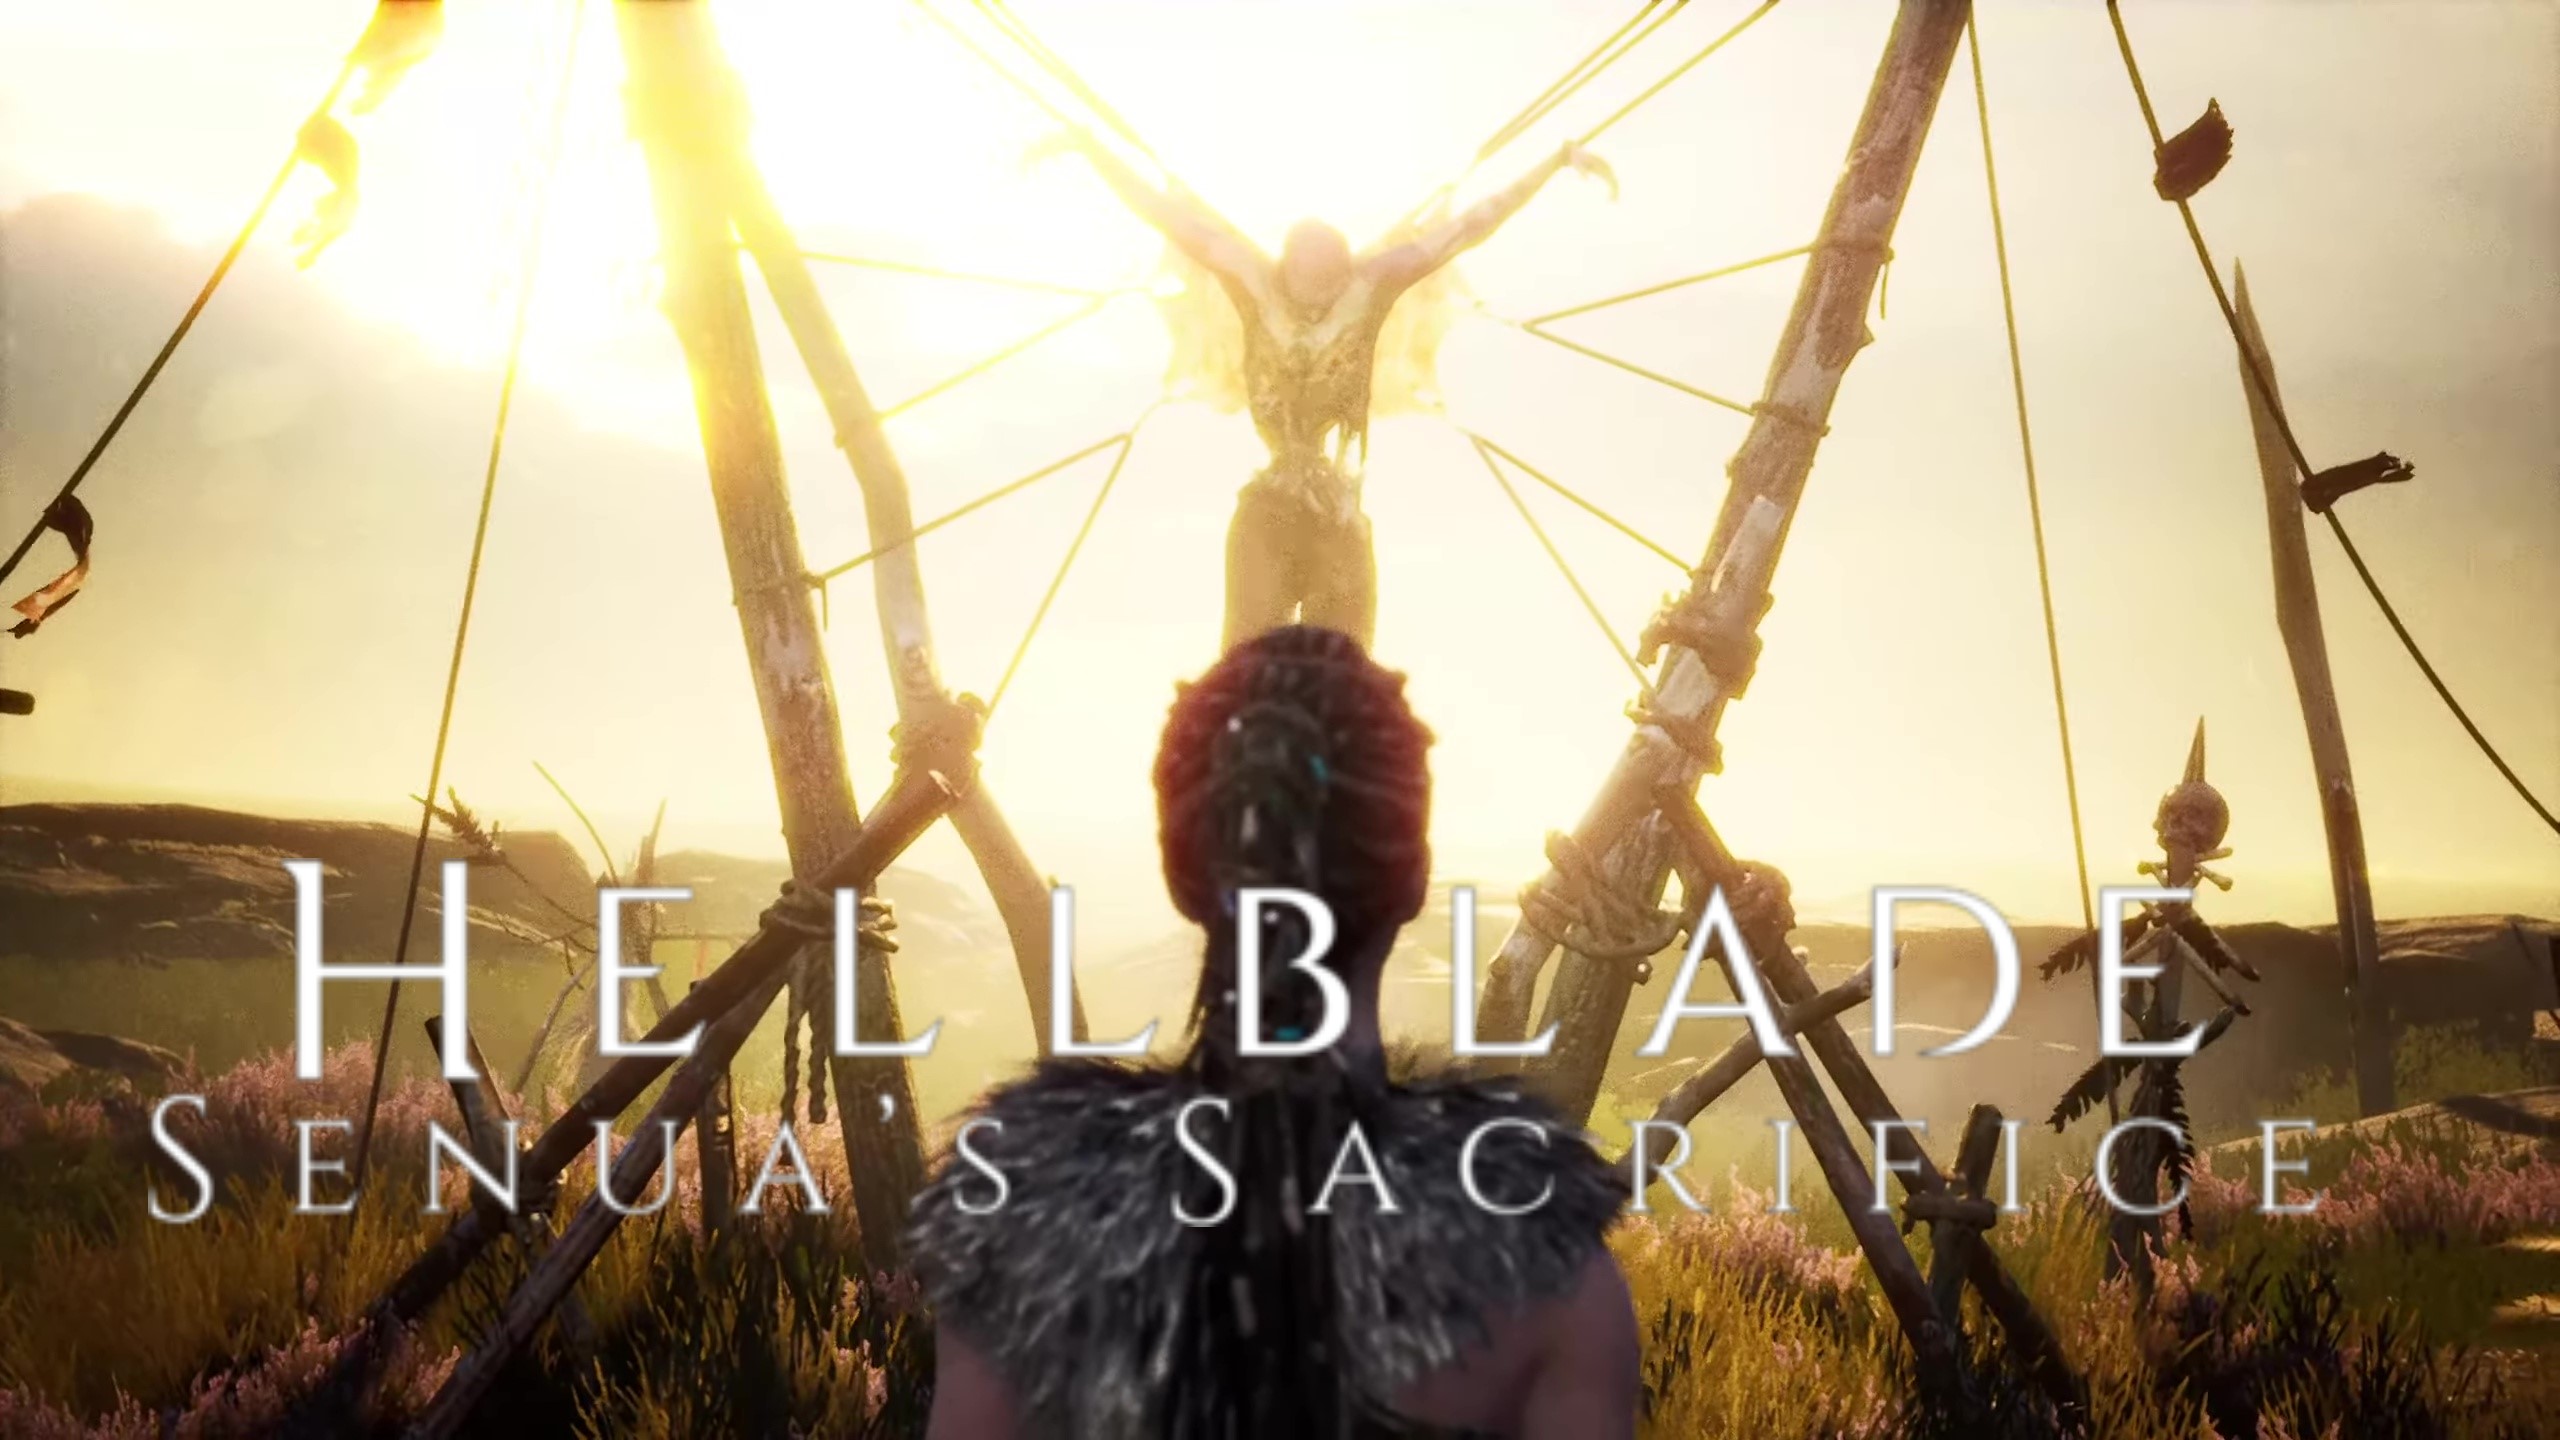 Прохождение игры(2К)► Hellblade Senua's Sacrifice(Русская озвучка)#4